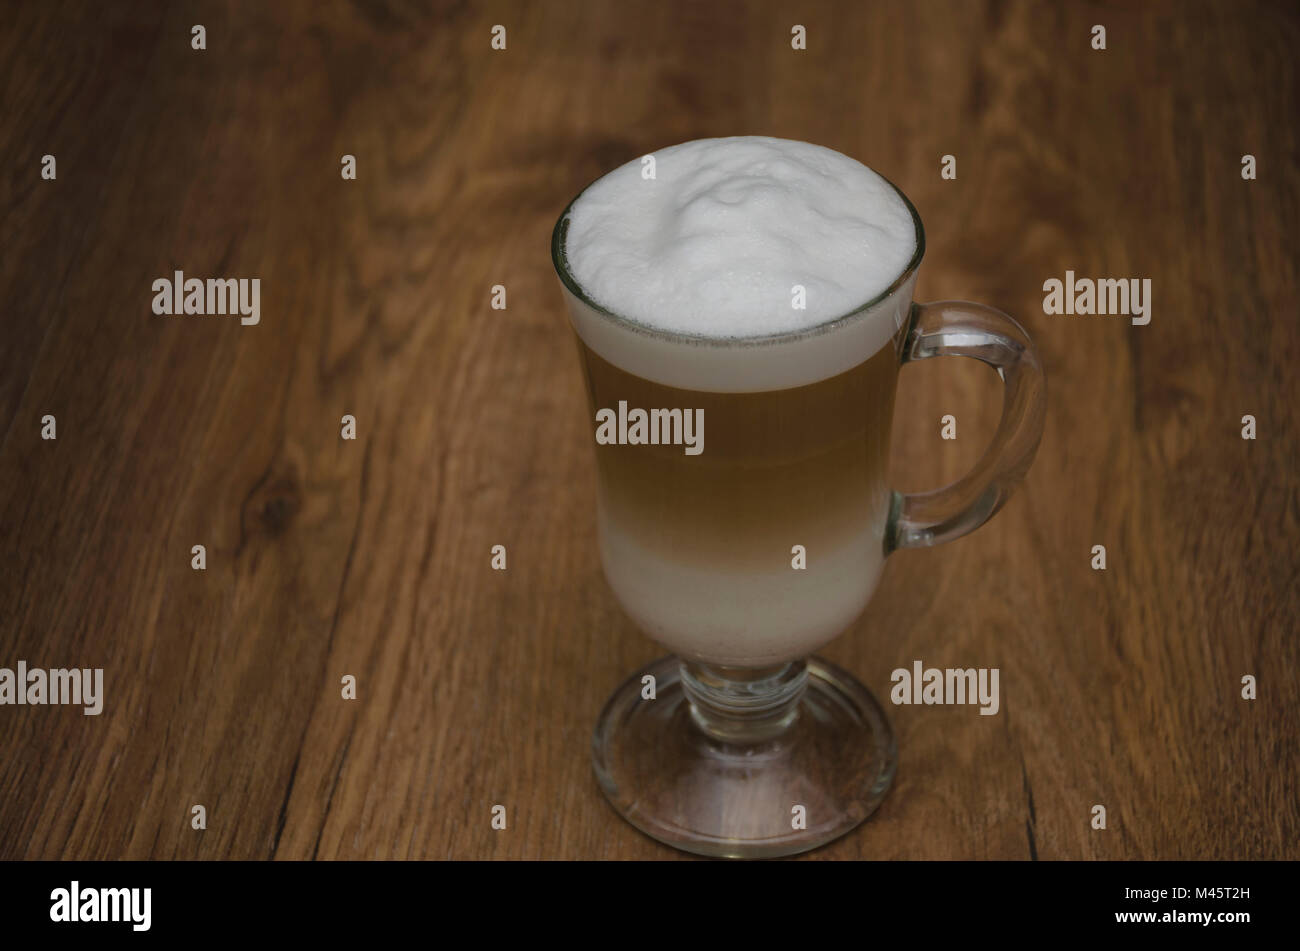 Heißes Getränk und Kaffee und Milch, Latte, Cappuccino, in einem schönen Glas Glas, auf einem Holztisch Stockfoto